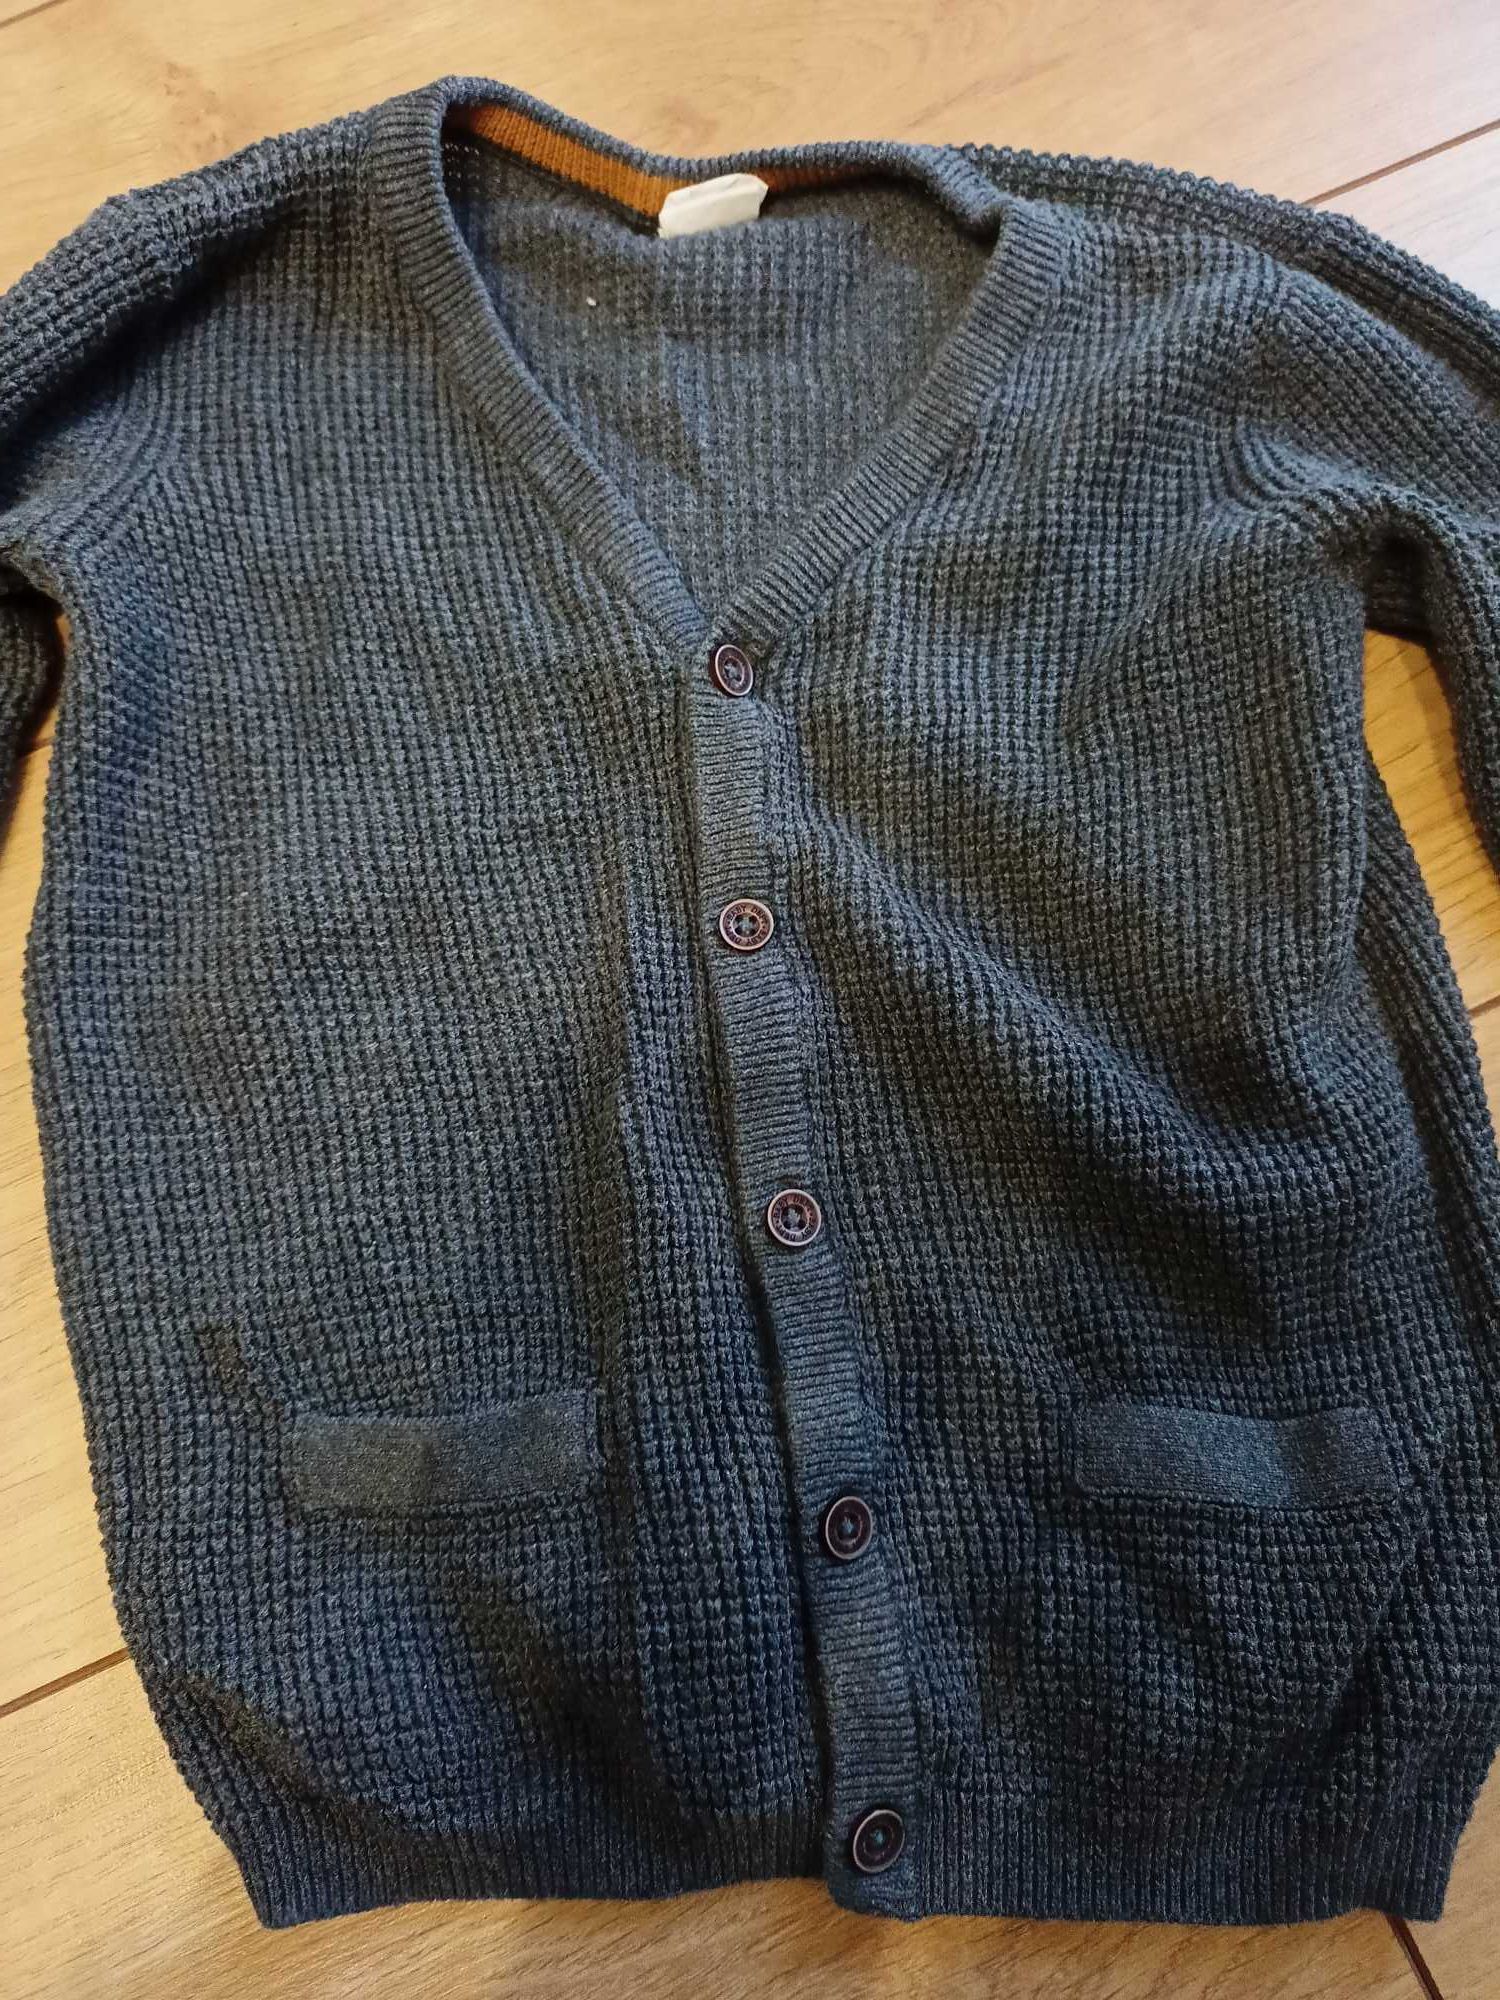 Elegancki sweter chłopięcy rozpinany na guziki z H&M - rozmiar 92